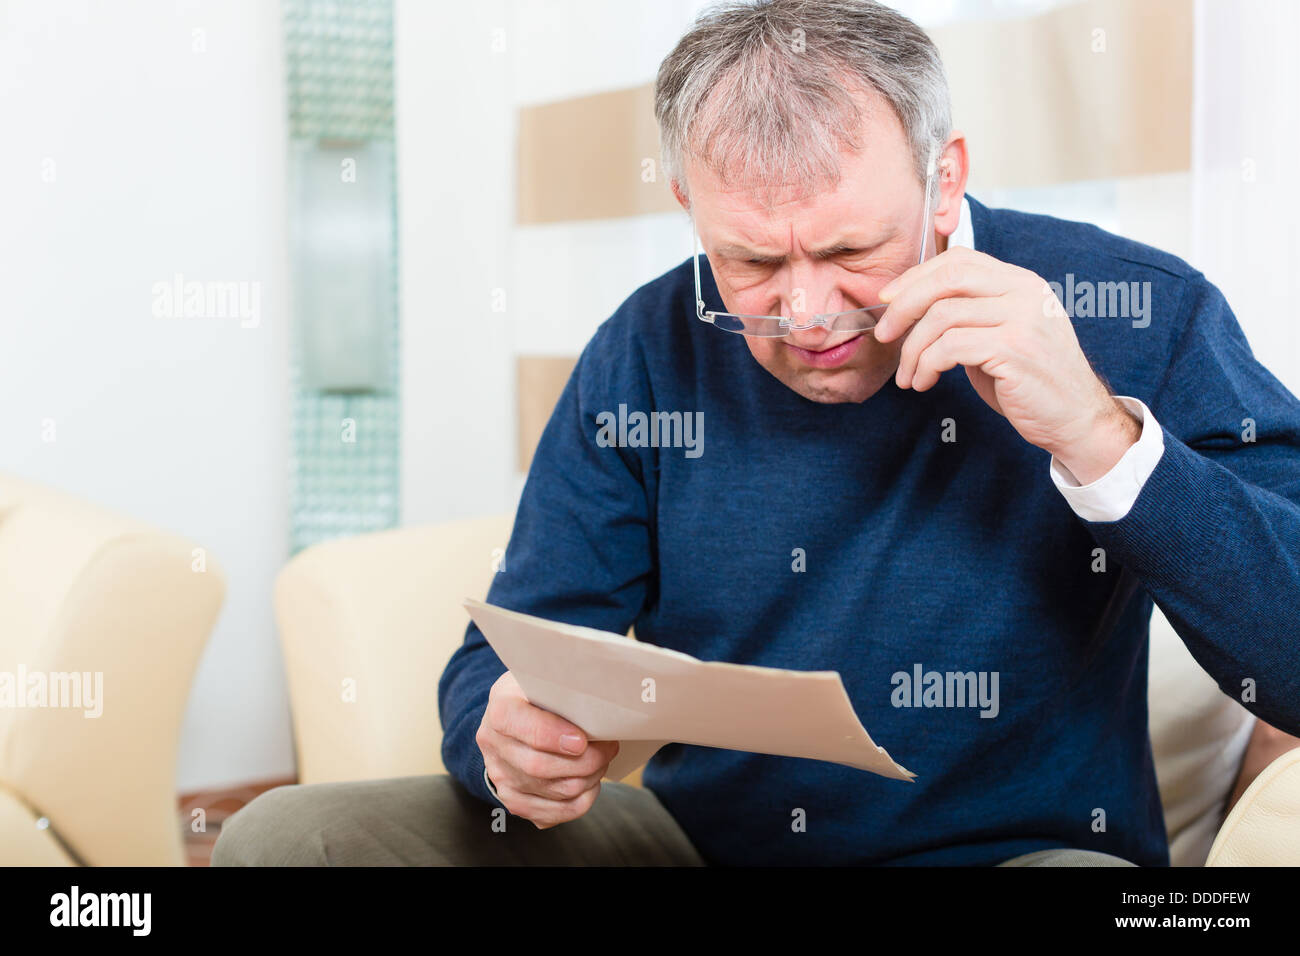 Uomo anziano o Senior hanno ricevuto una lettera, forse si tratta di un promemoria o una fattura Foto Stock